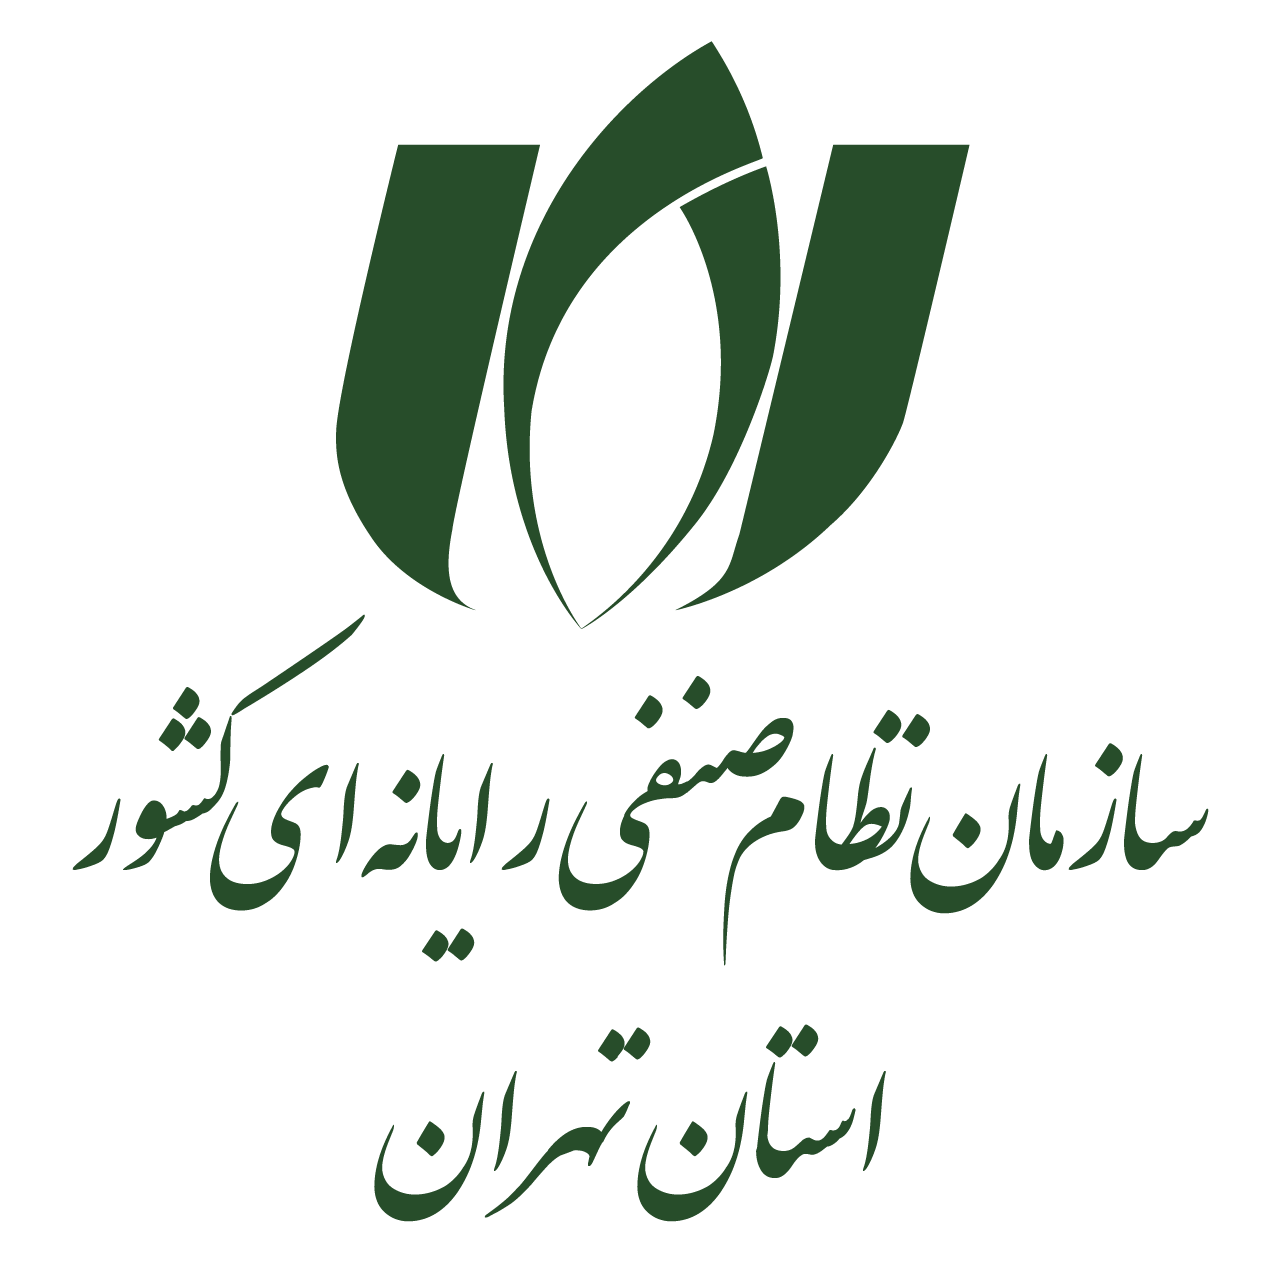 نام وب سایت : سازمان نظام صنفی تهران